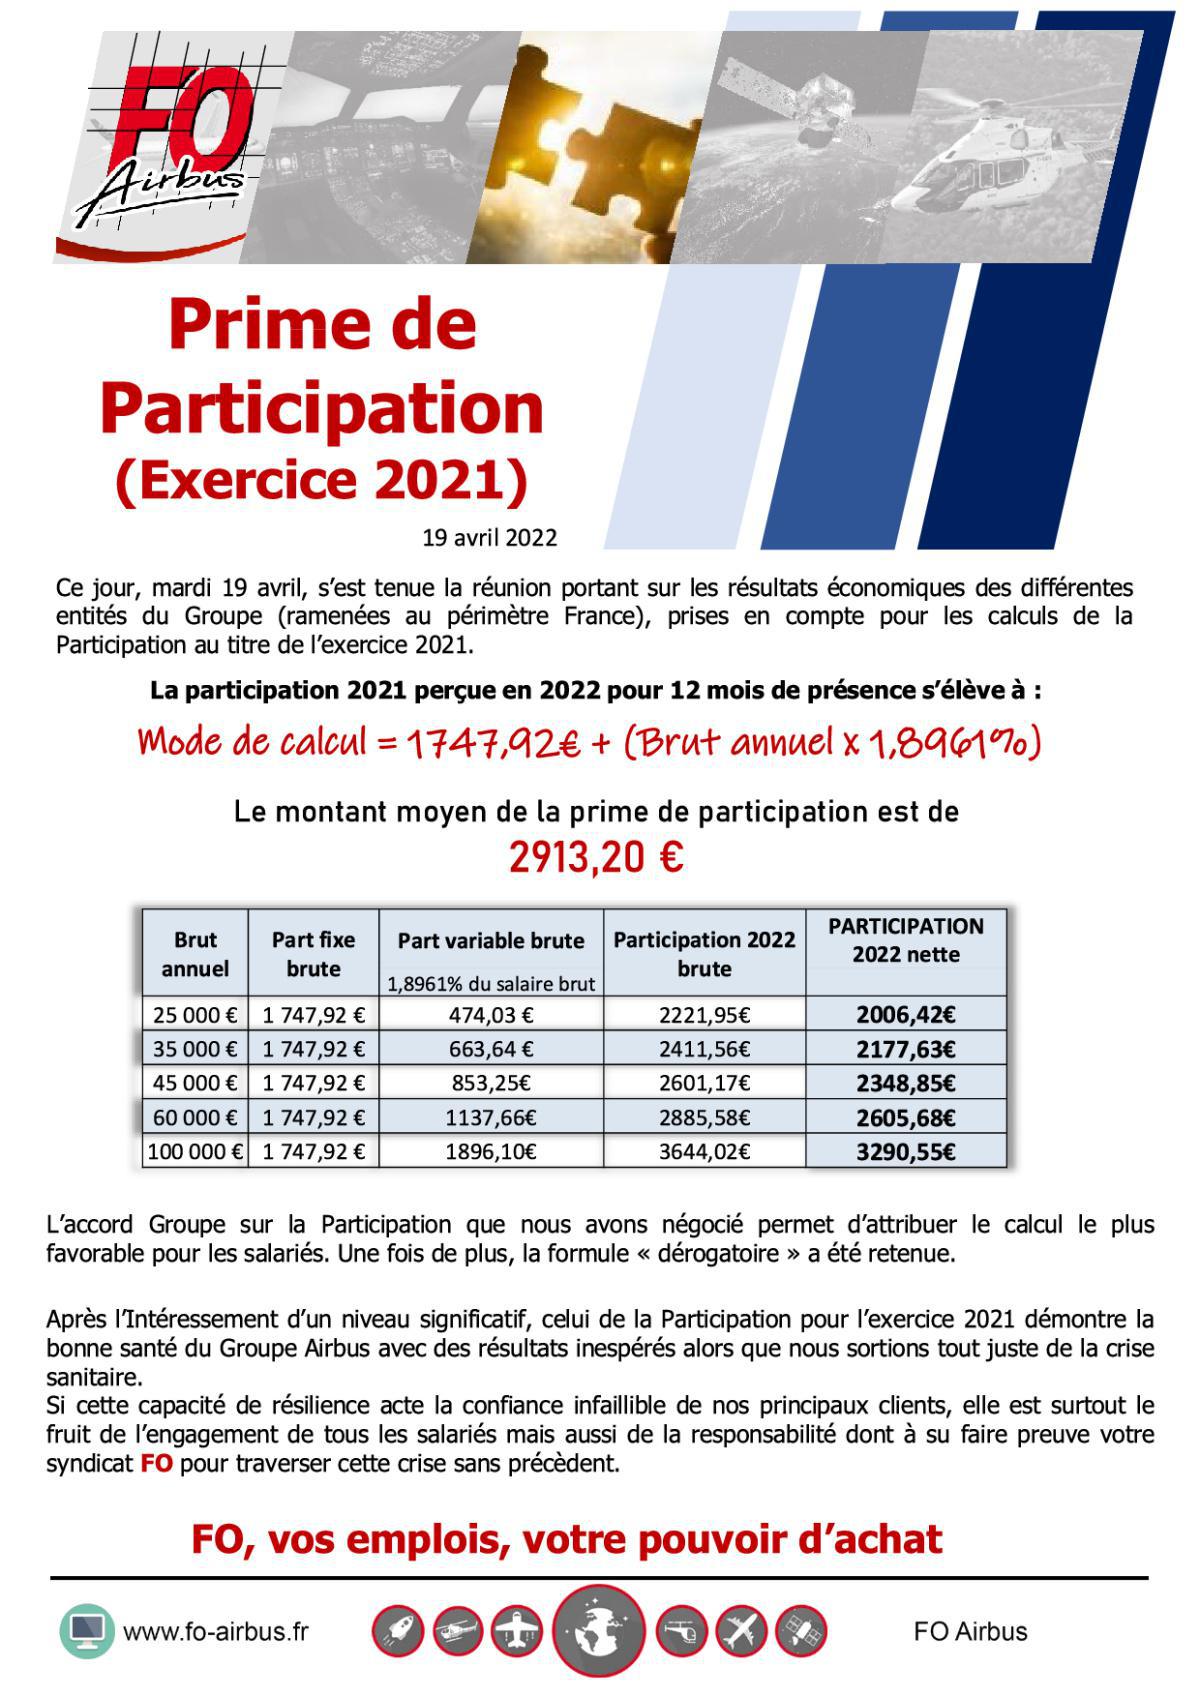 Prime de Participation - Exercice 2021